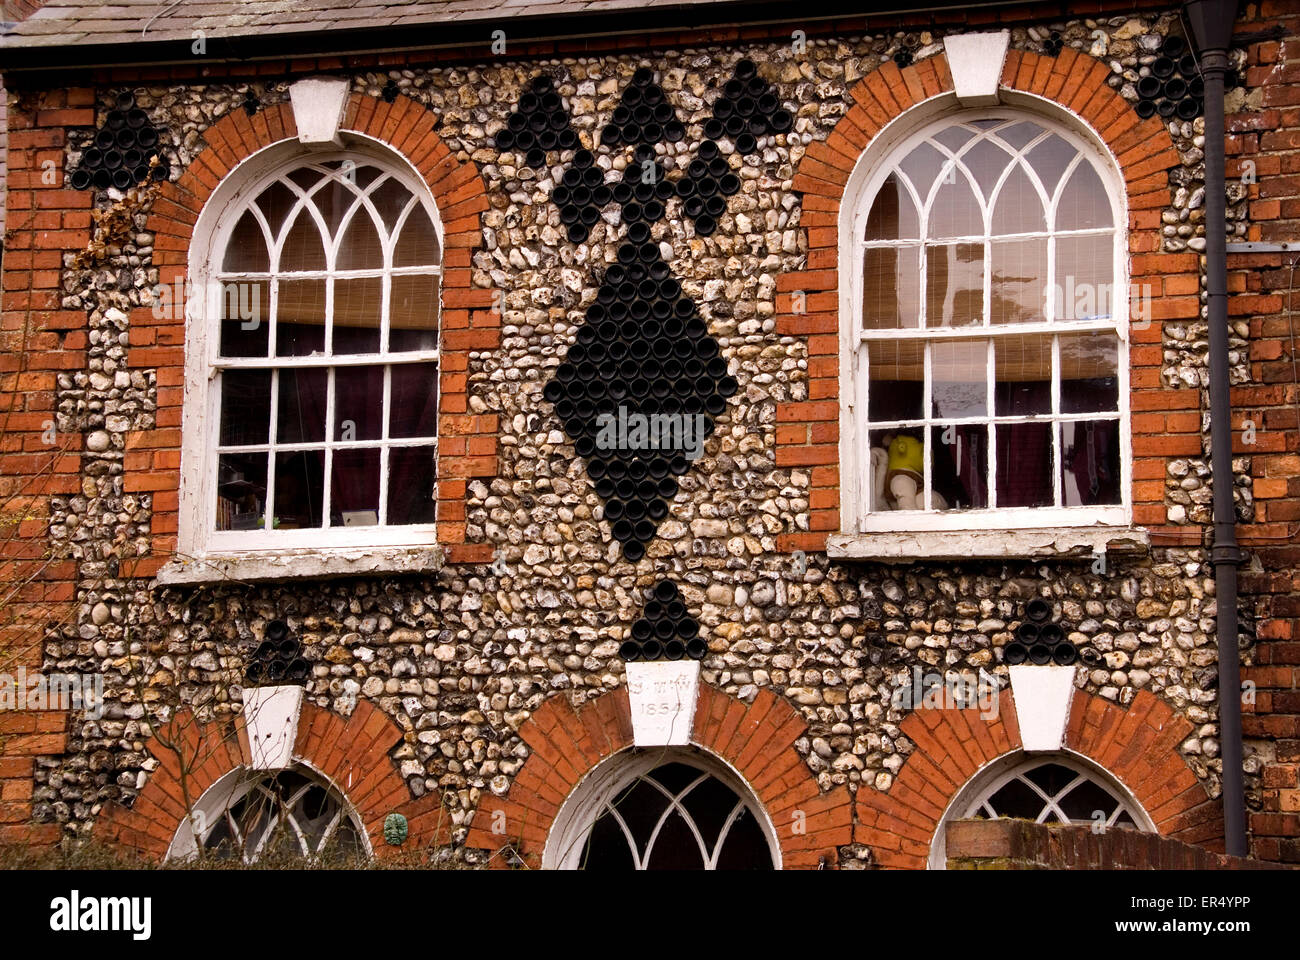 Argent - Aylesbury - briques et silex cottage avec sa façade est décorée de style gothique - Windows - Histoire sociale Banque D'Images